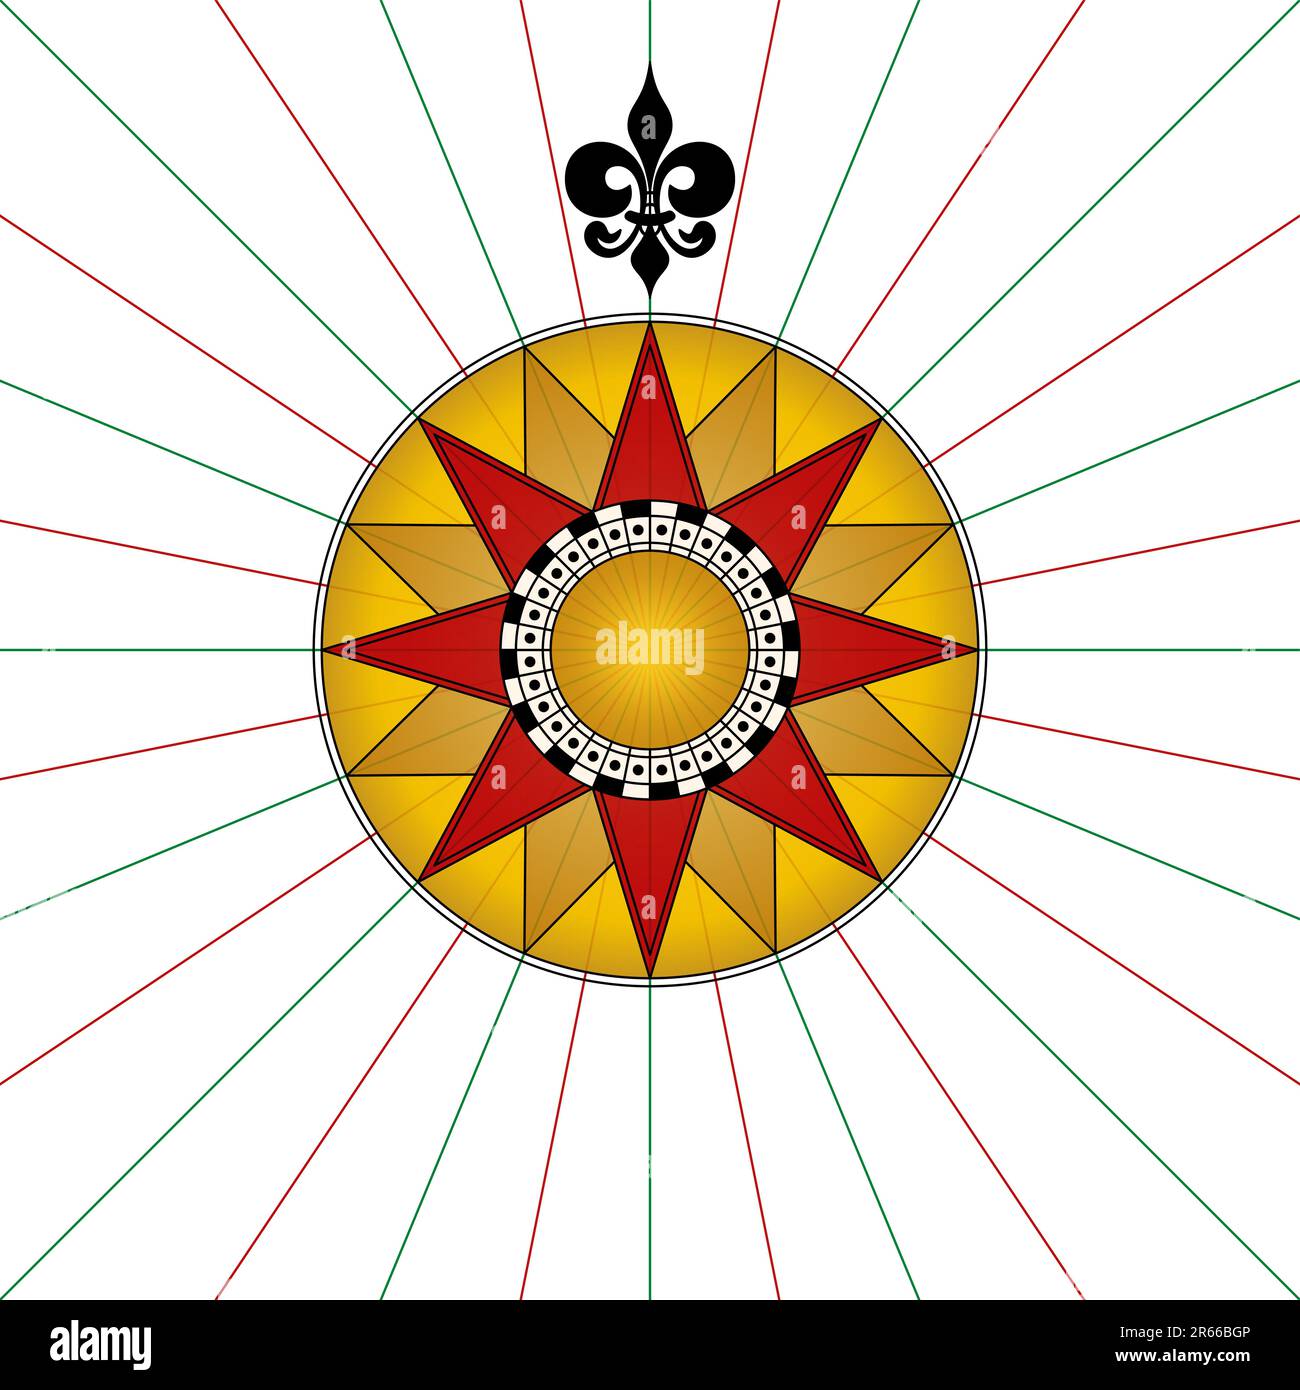 Kompassrose mit einem Fleur-de-Lis nach Norden. Kompassstern oder Windrose mit acht Hauptwinden, die die Richtung des Kardinals zeigen. Stockfoto